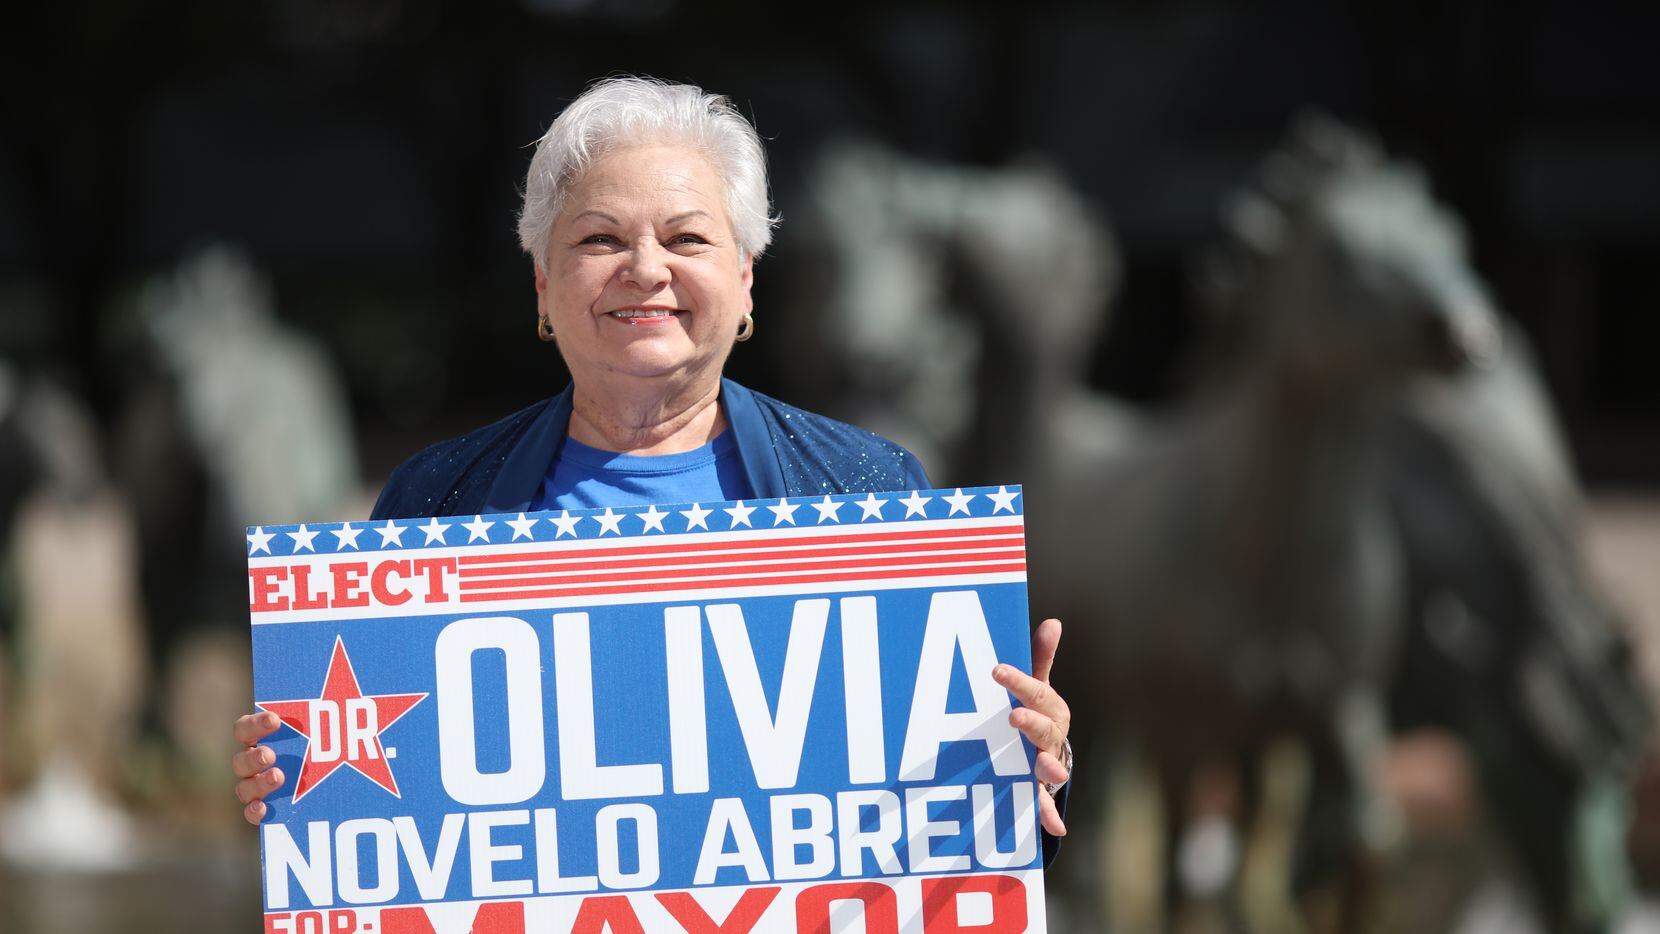 Olivia Novelo Abreu es candidata a alcaldesa de Irving.